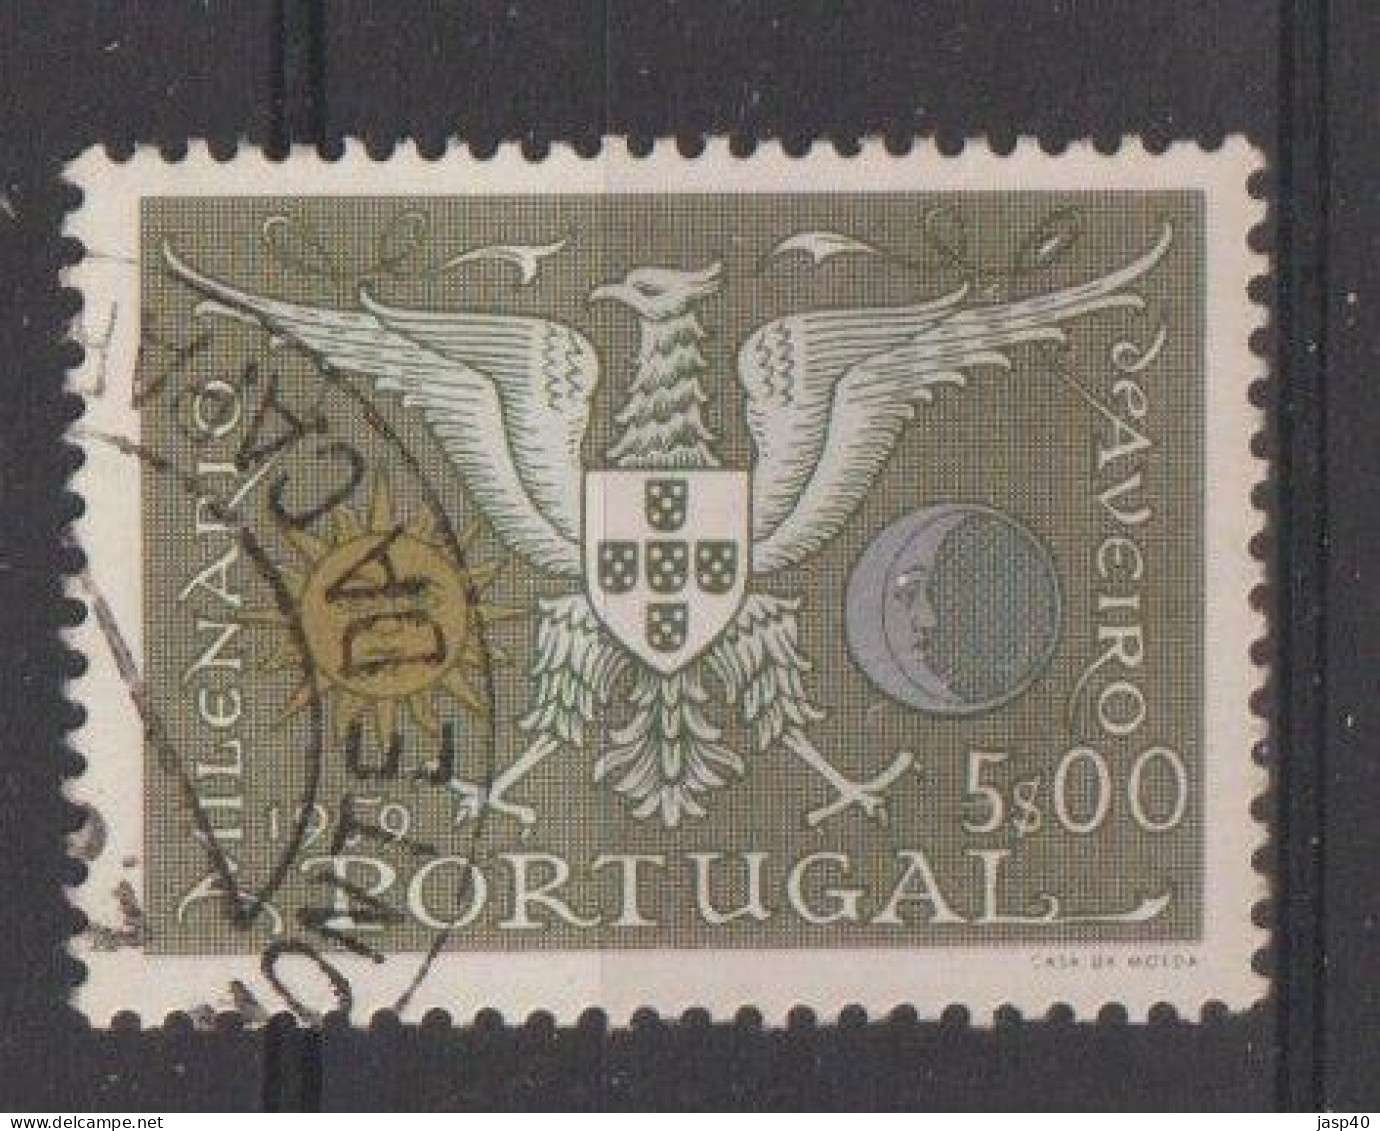 PORTUGAL 848 - POSTMARKS OF PORTUGAL - MONTE DA CAPARICA - Usado